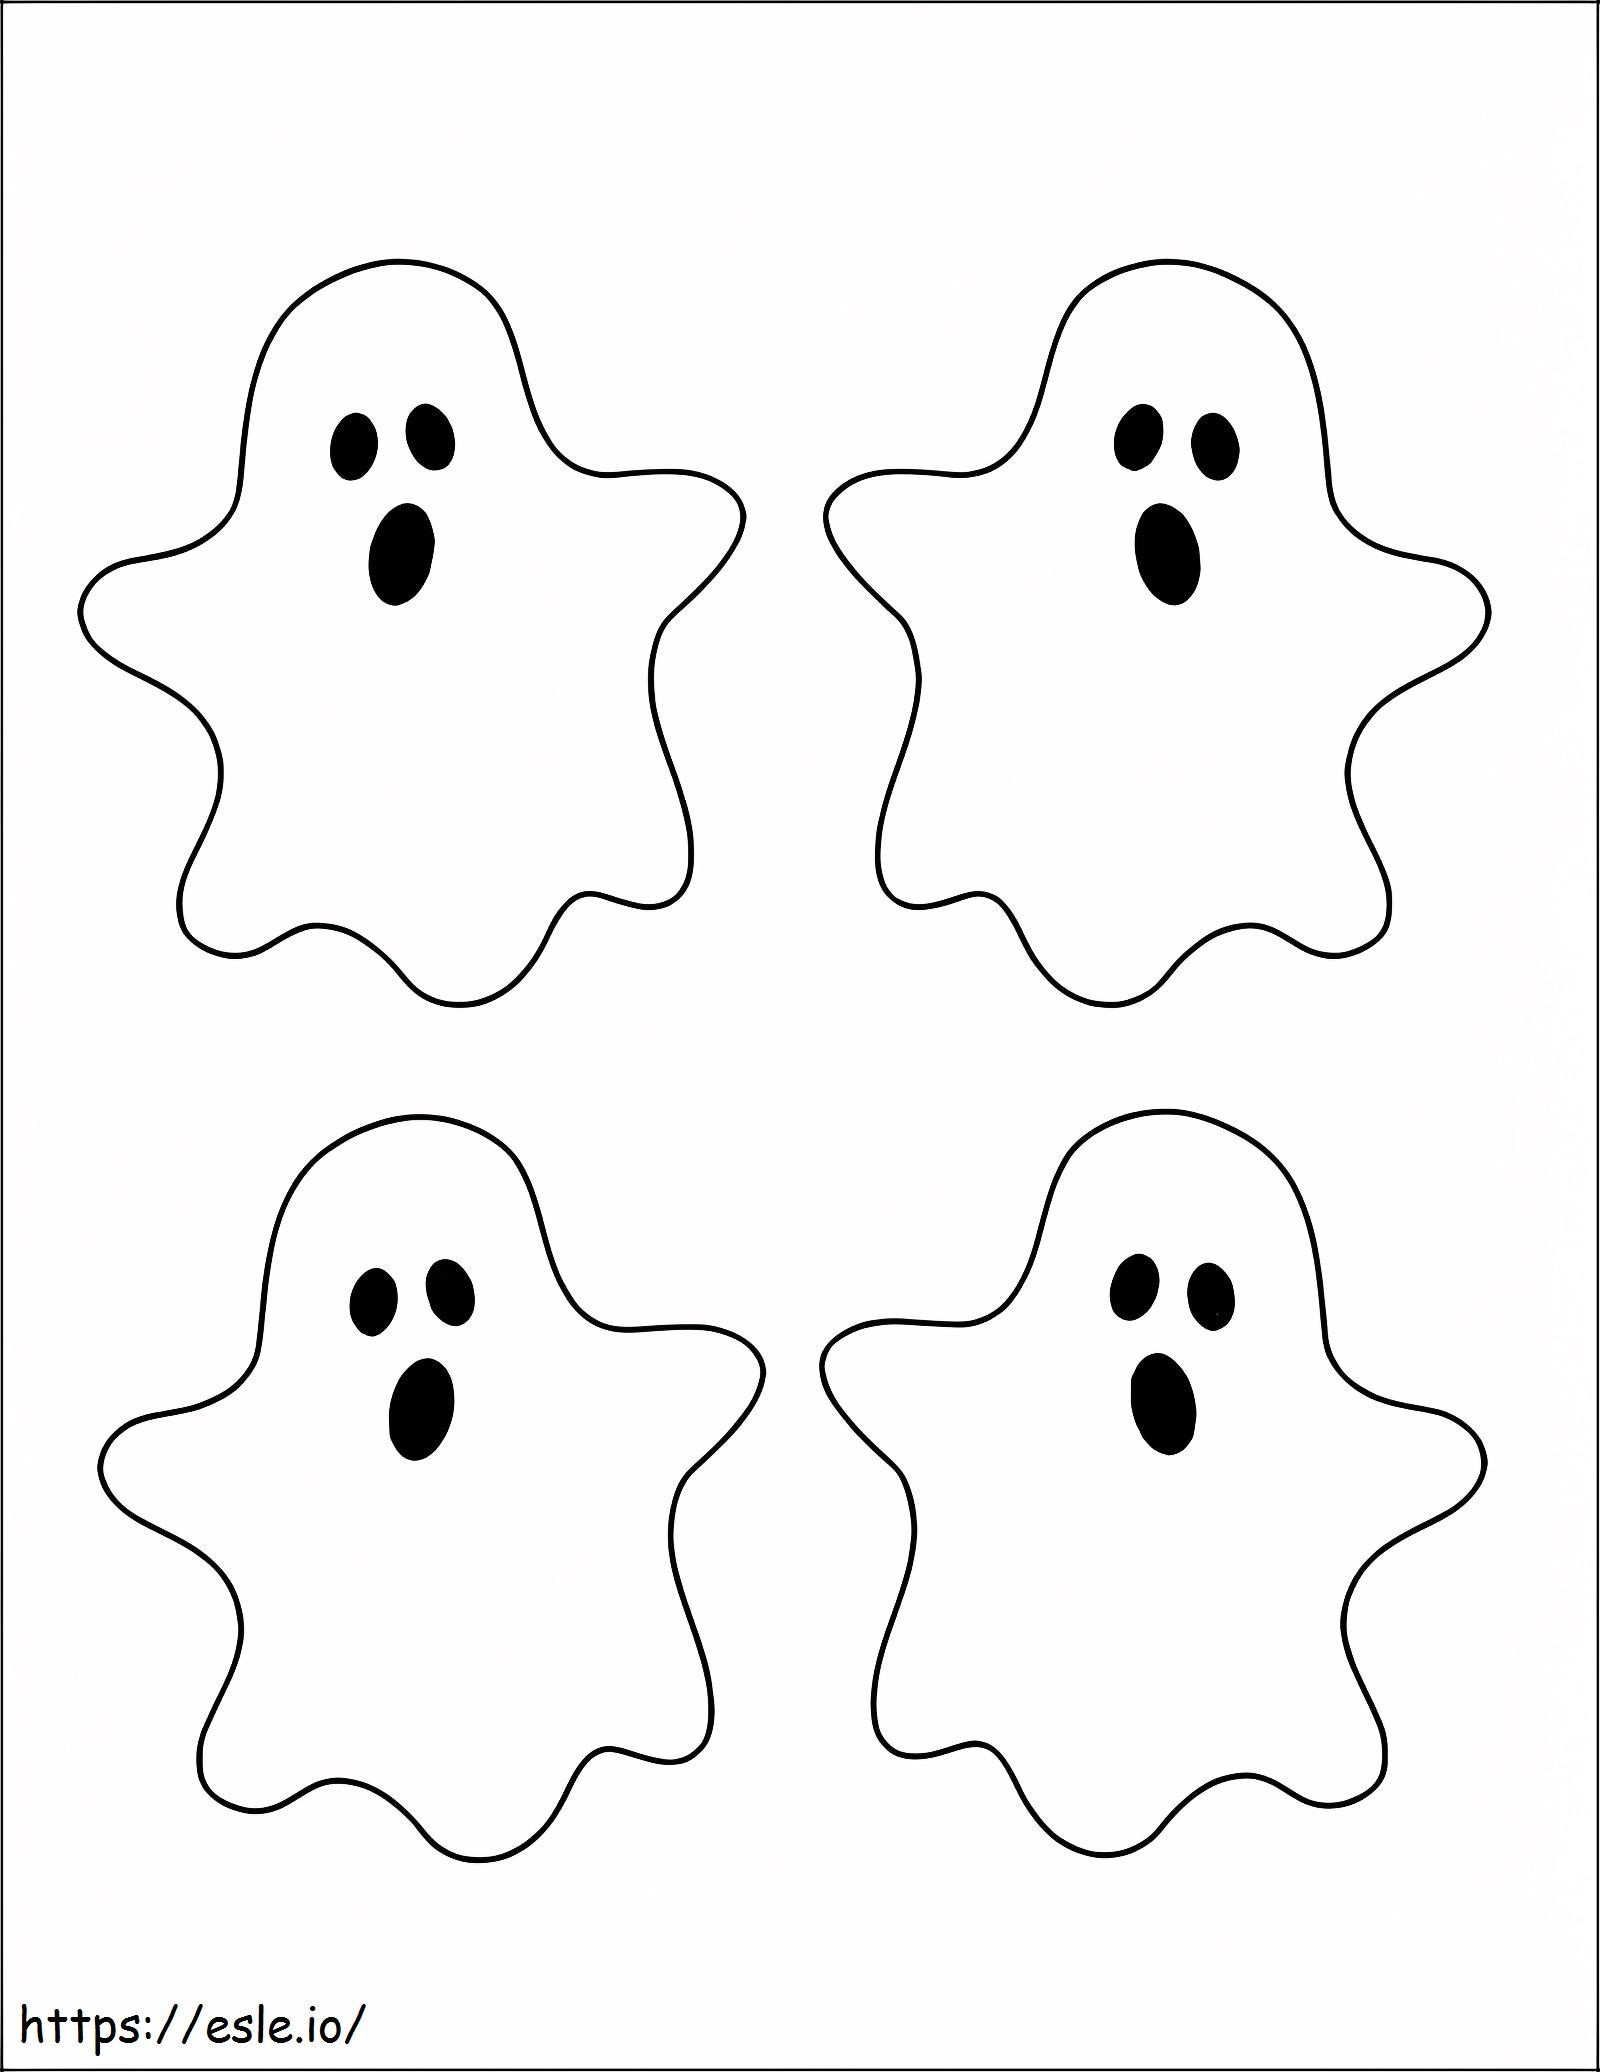 cuatro fantasmas para colorear